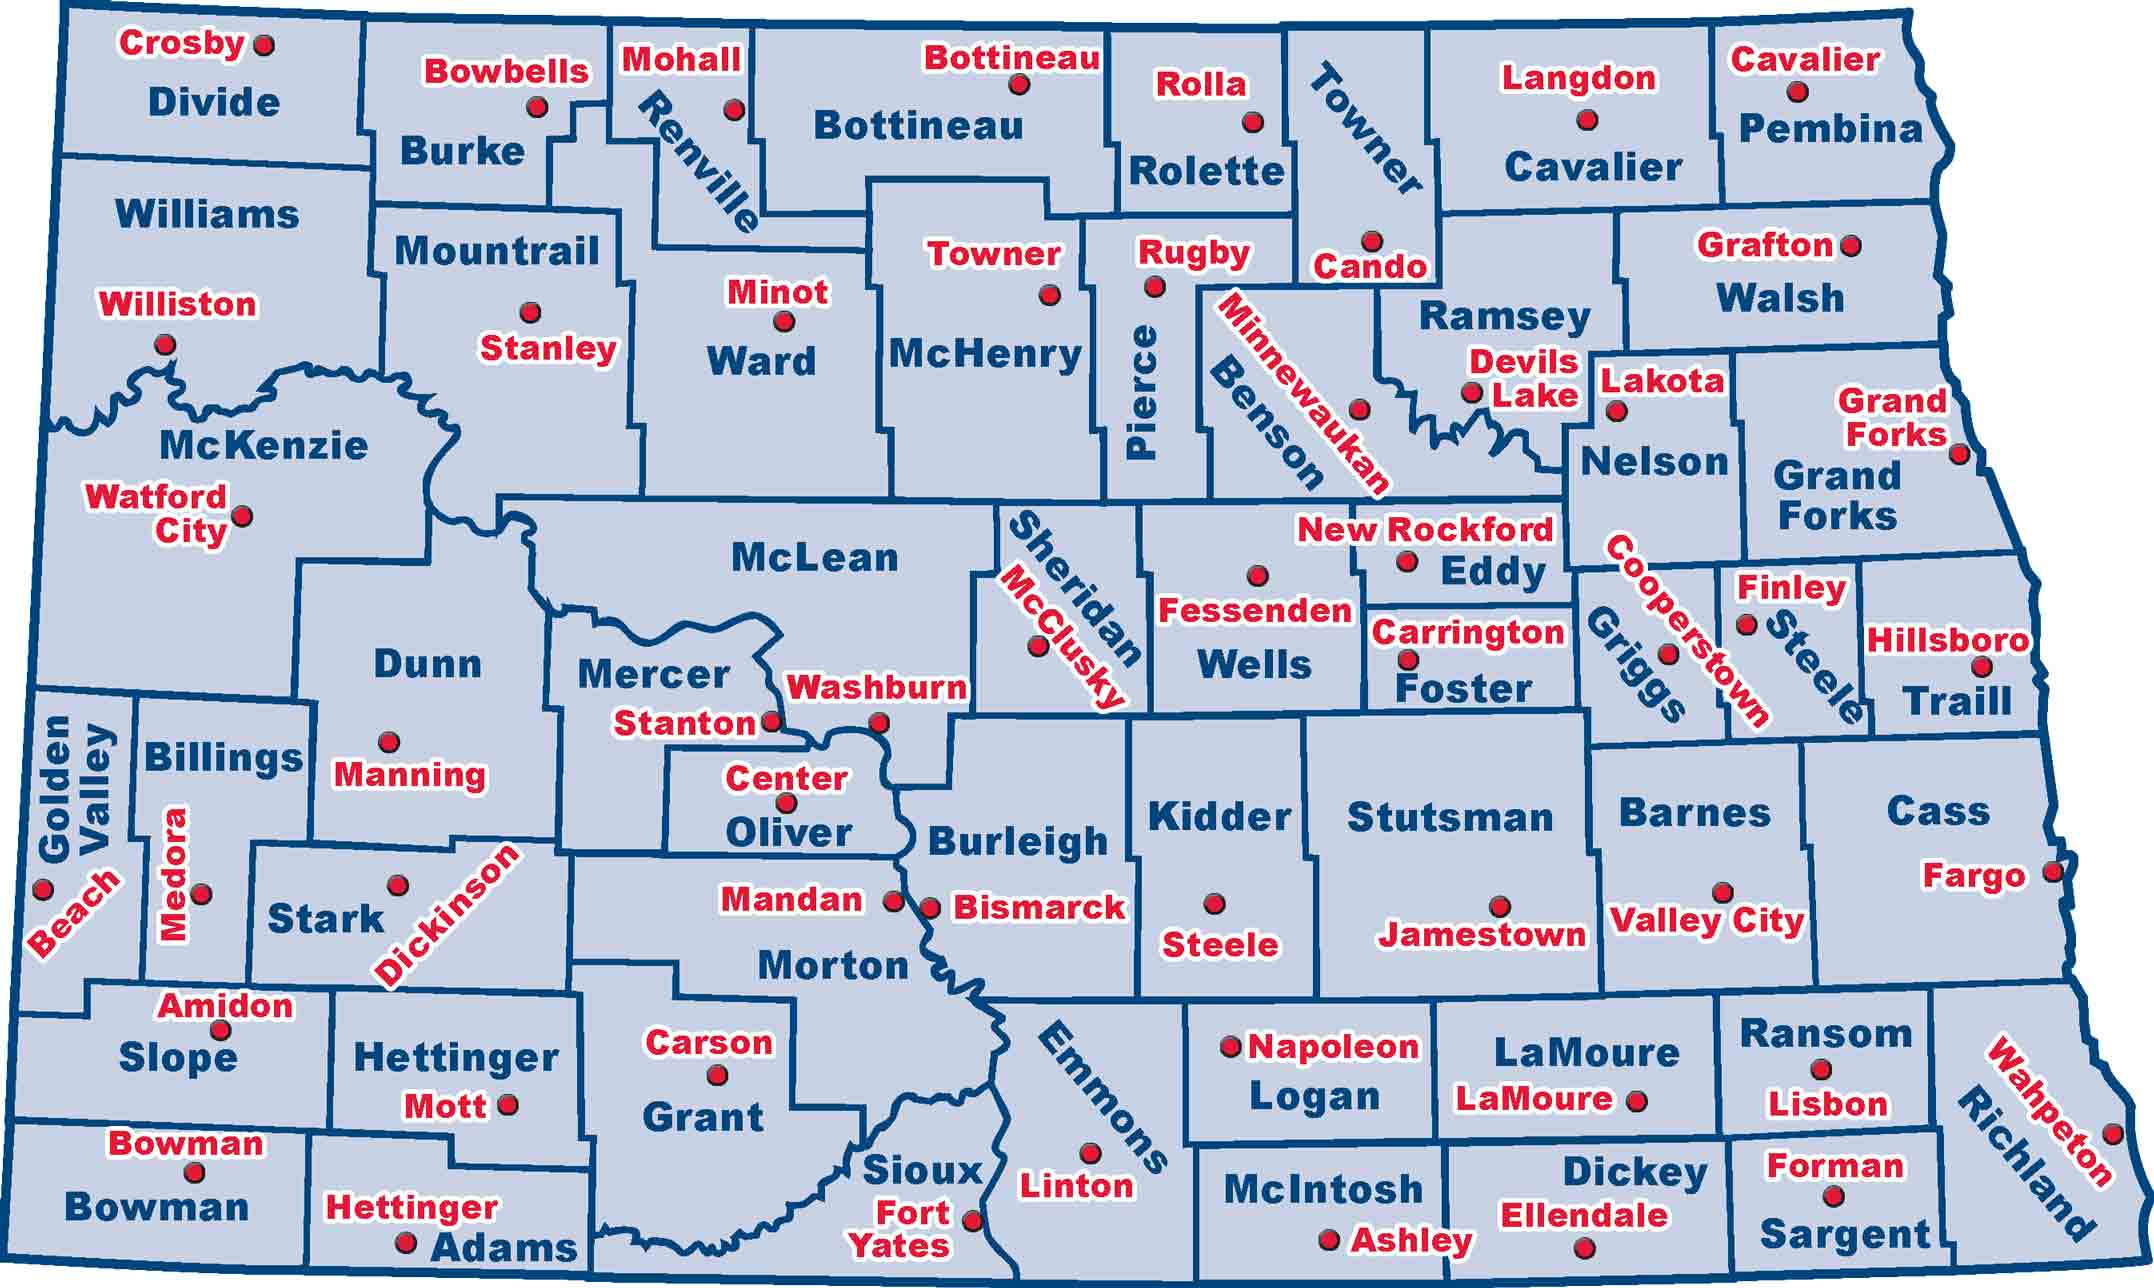 North Dakota has 53 counties